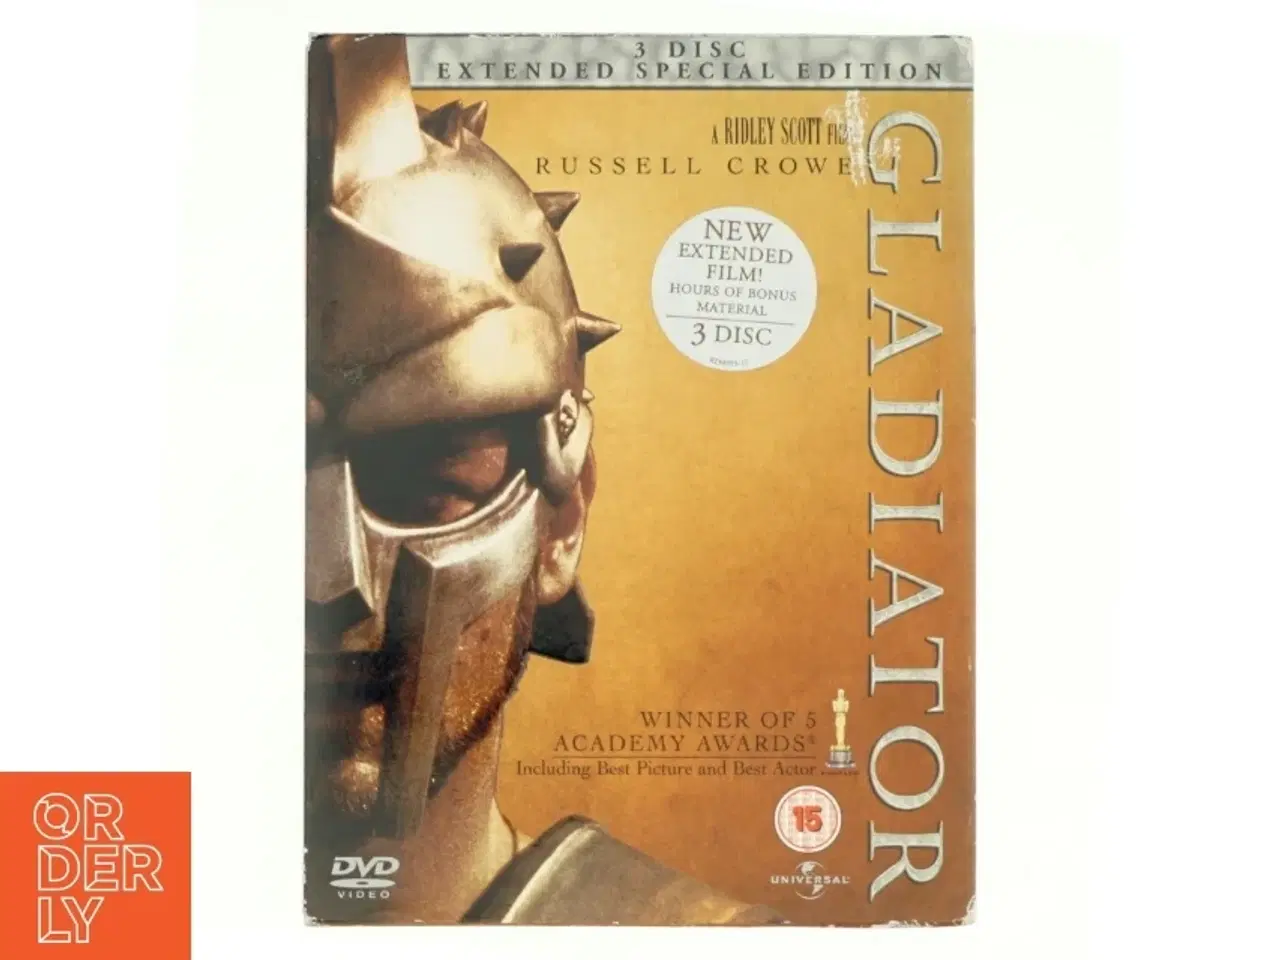 Billede 1 - Gladiator